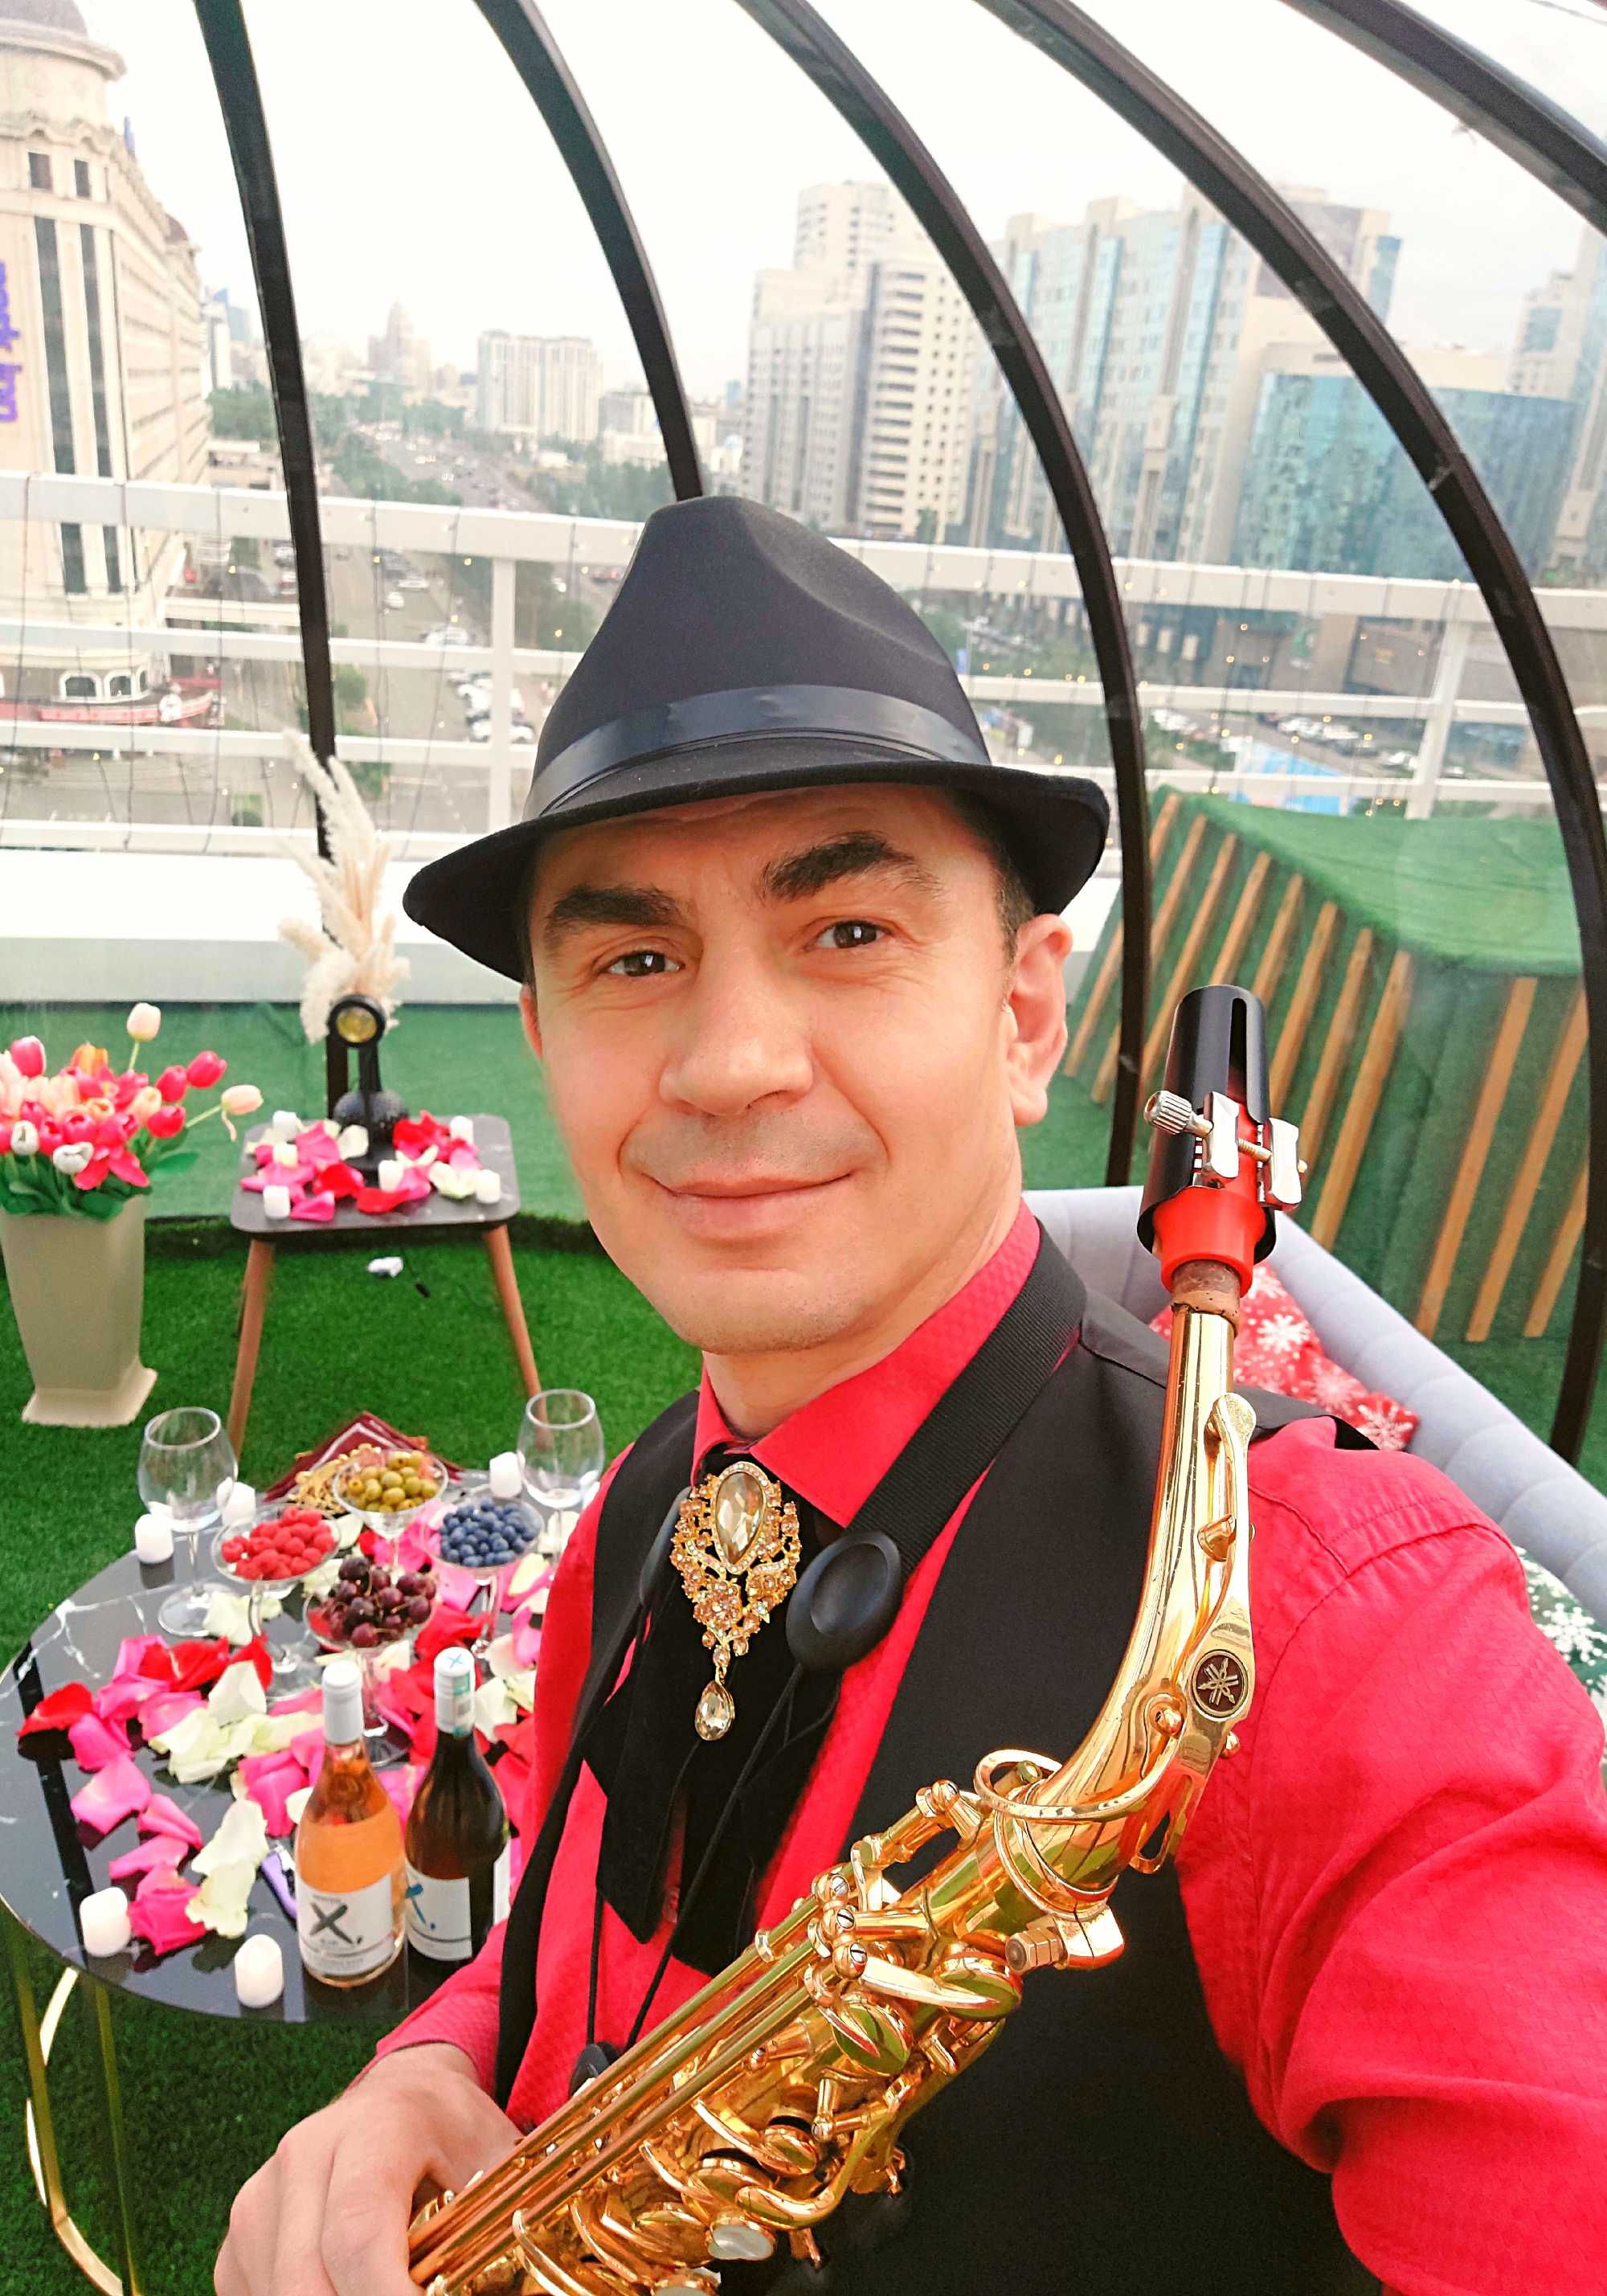 Саксофонист на мероприятие в Нур-Султан (Астана) саксофон дуэт джаз